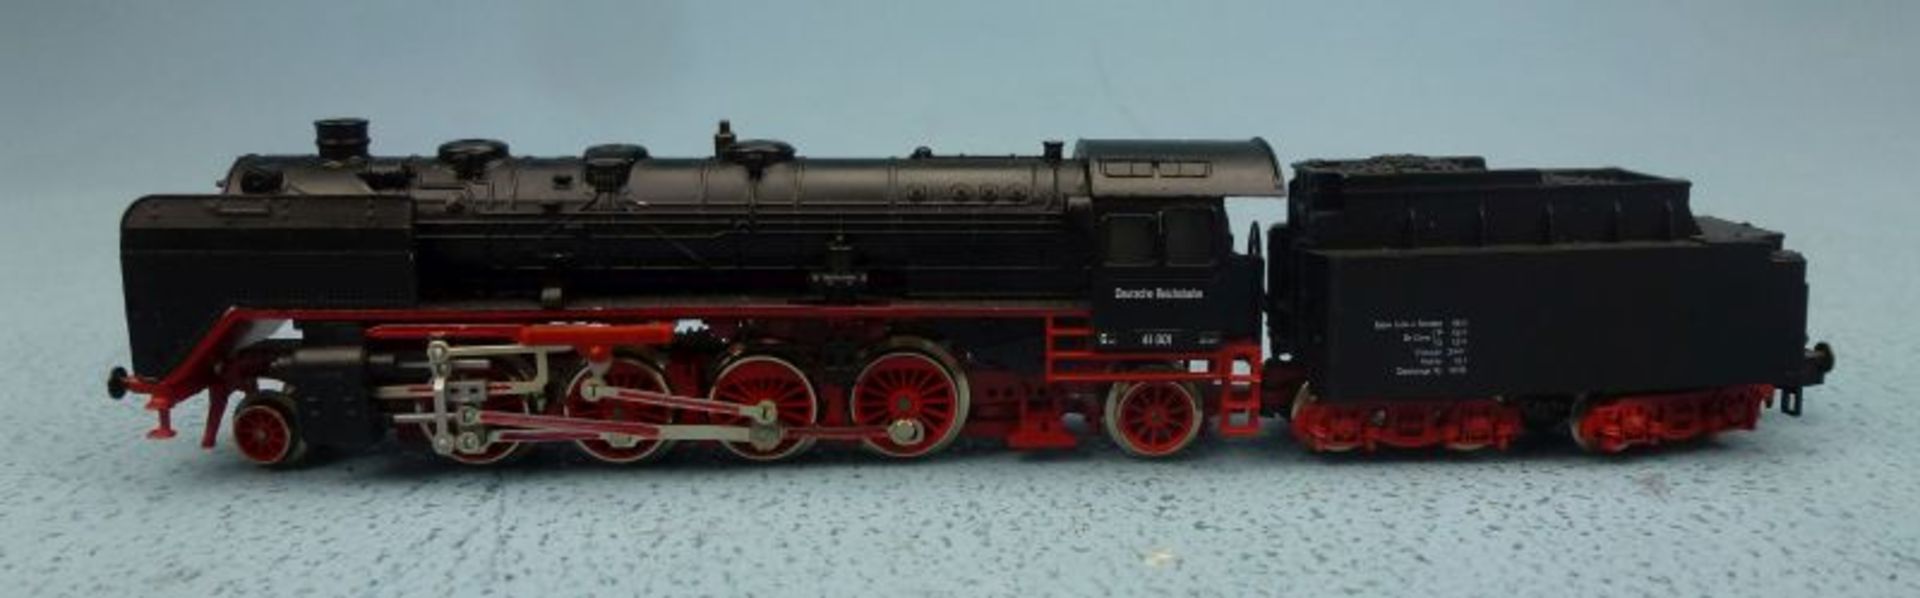 2 Dampflokomotiven 2280 / 2512, Arnold - Bild 2 aus 3